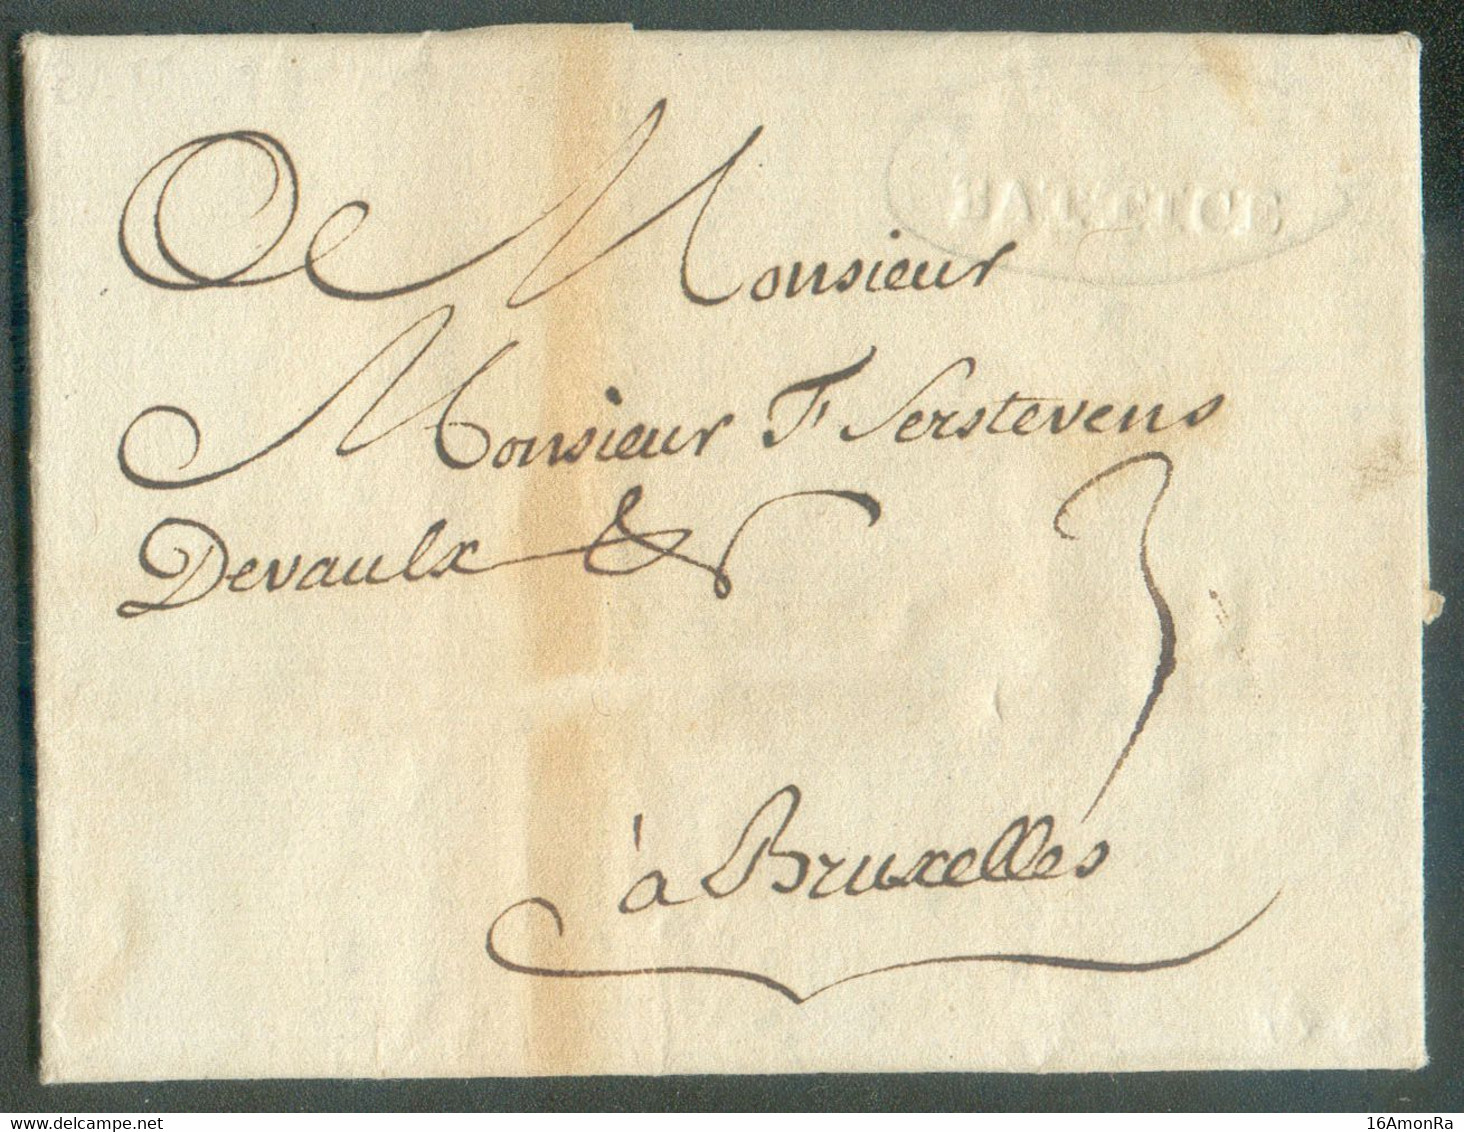 LAC De DOLHAIN Le 30 Mars 1778 Via (griffe En Creux)  BATTICE Vers Bruxelles - Très Bon Texte Sur Le Commerce Des Draps - 1714-1794 (Oesterreichische Niederlande)